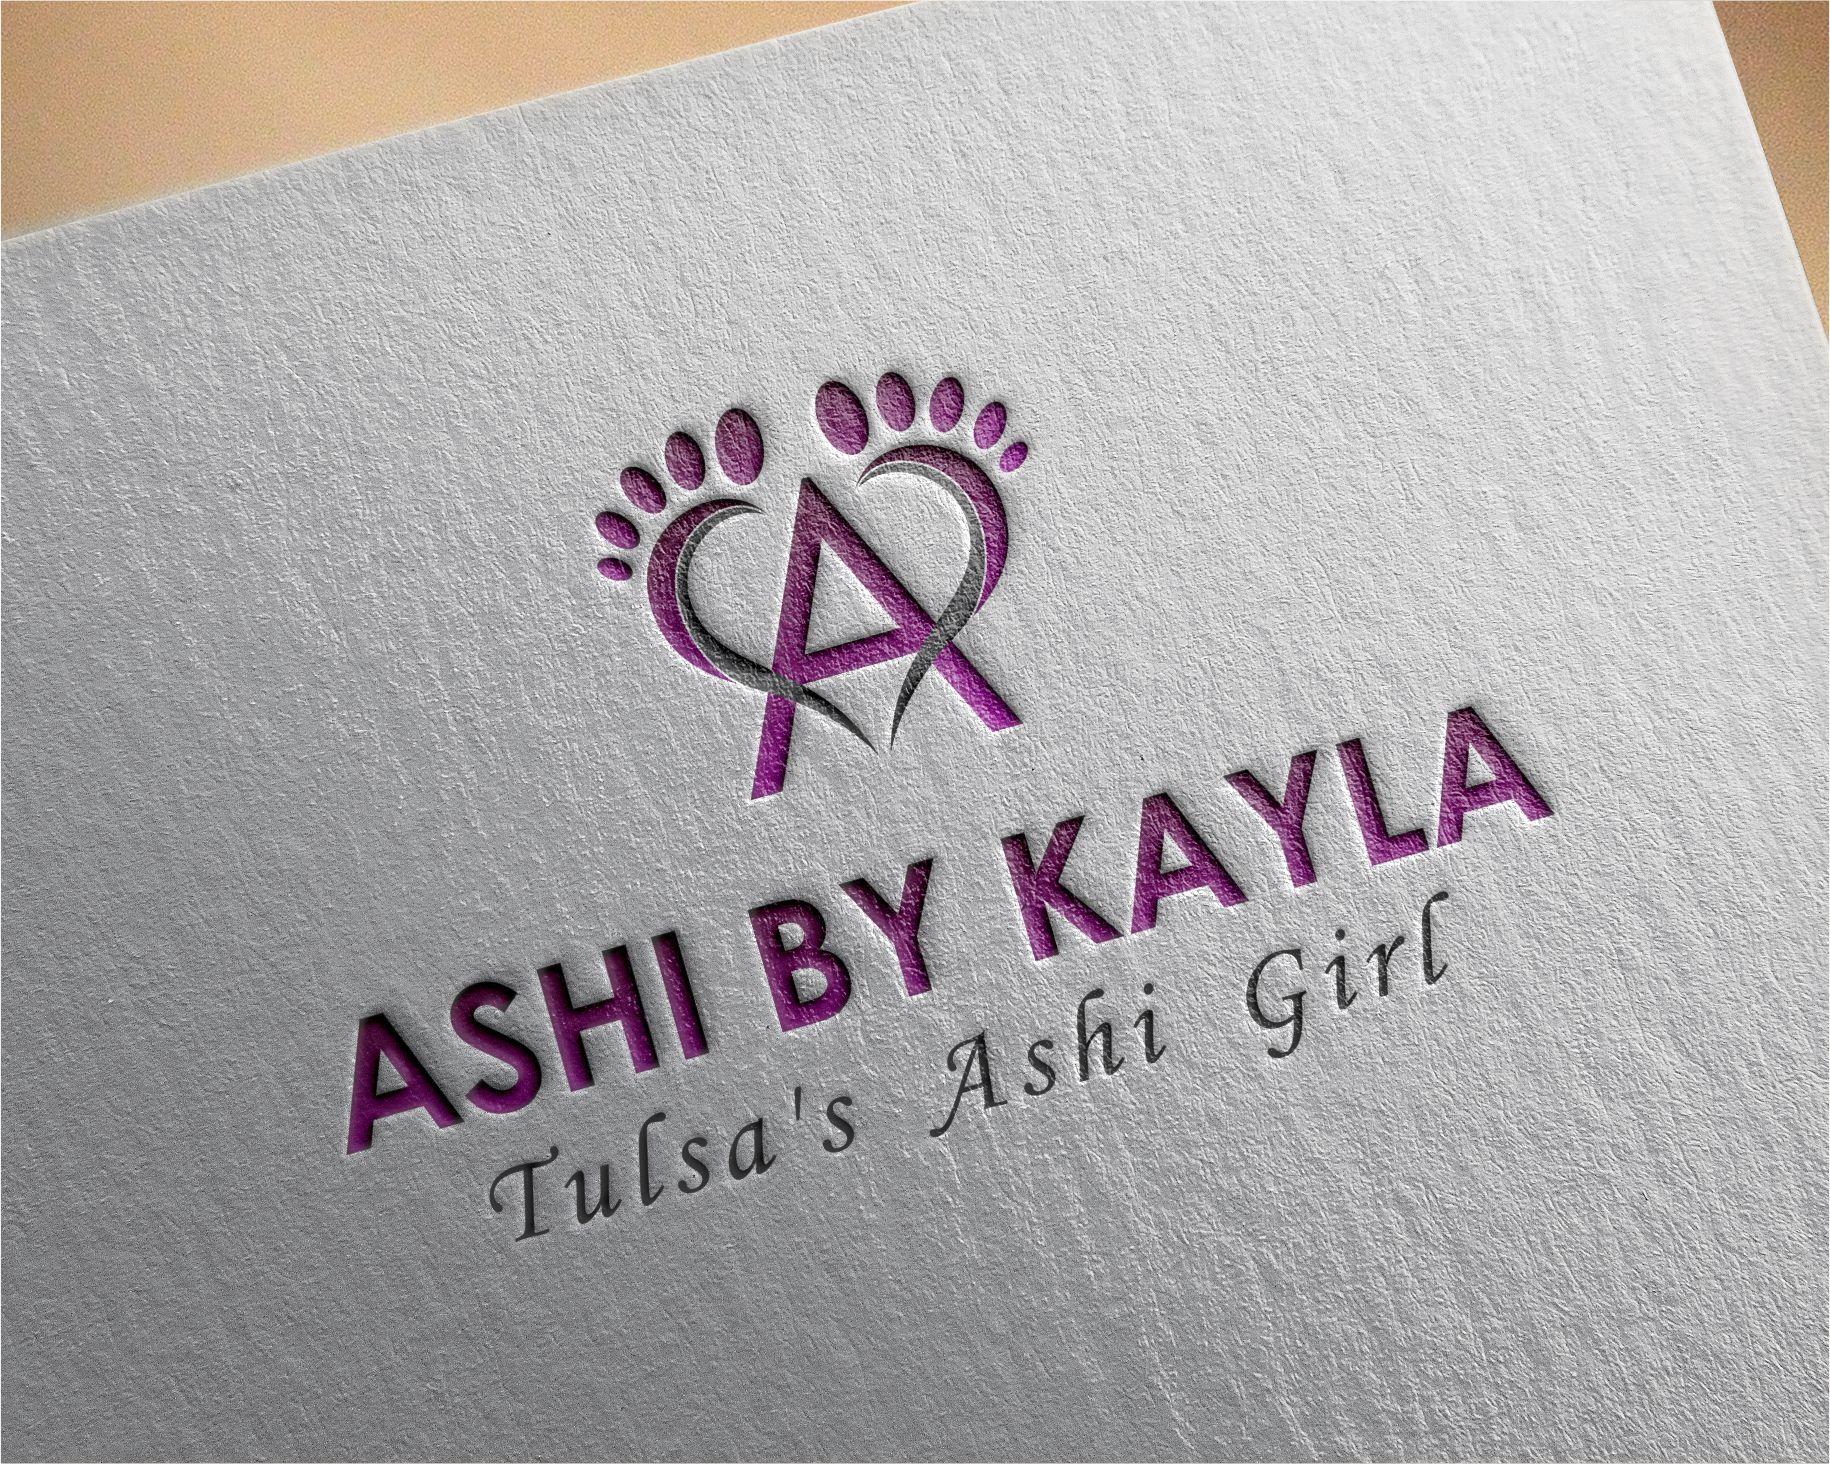 Kayla Logo - Logo Design Contest for Ashi by Kayla | Hatchwise